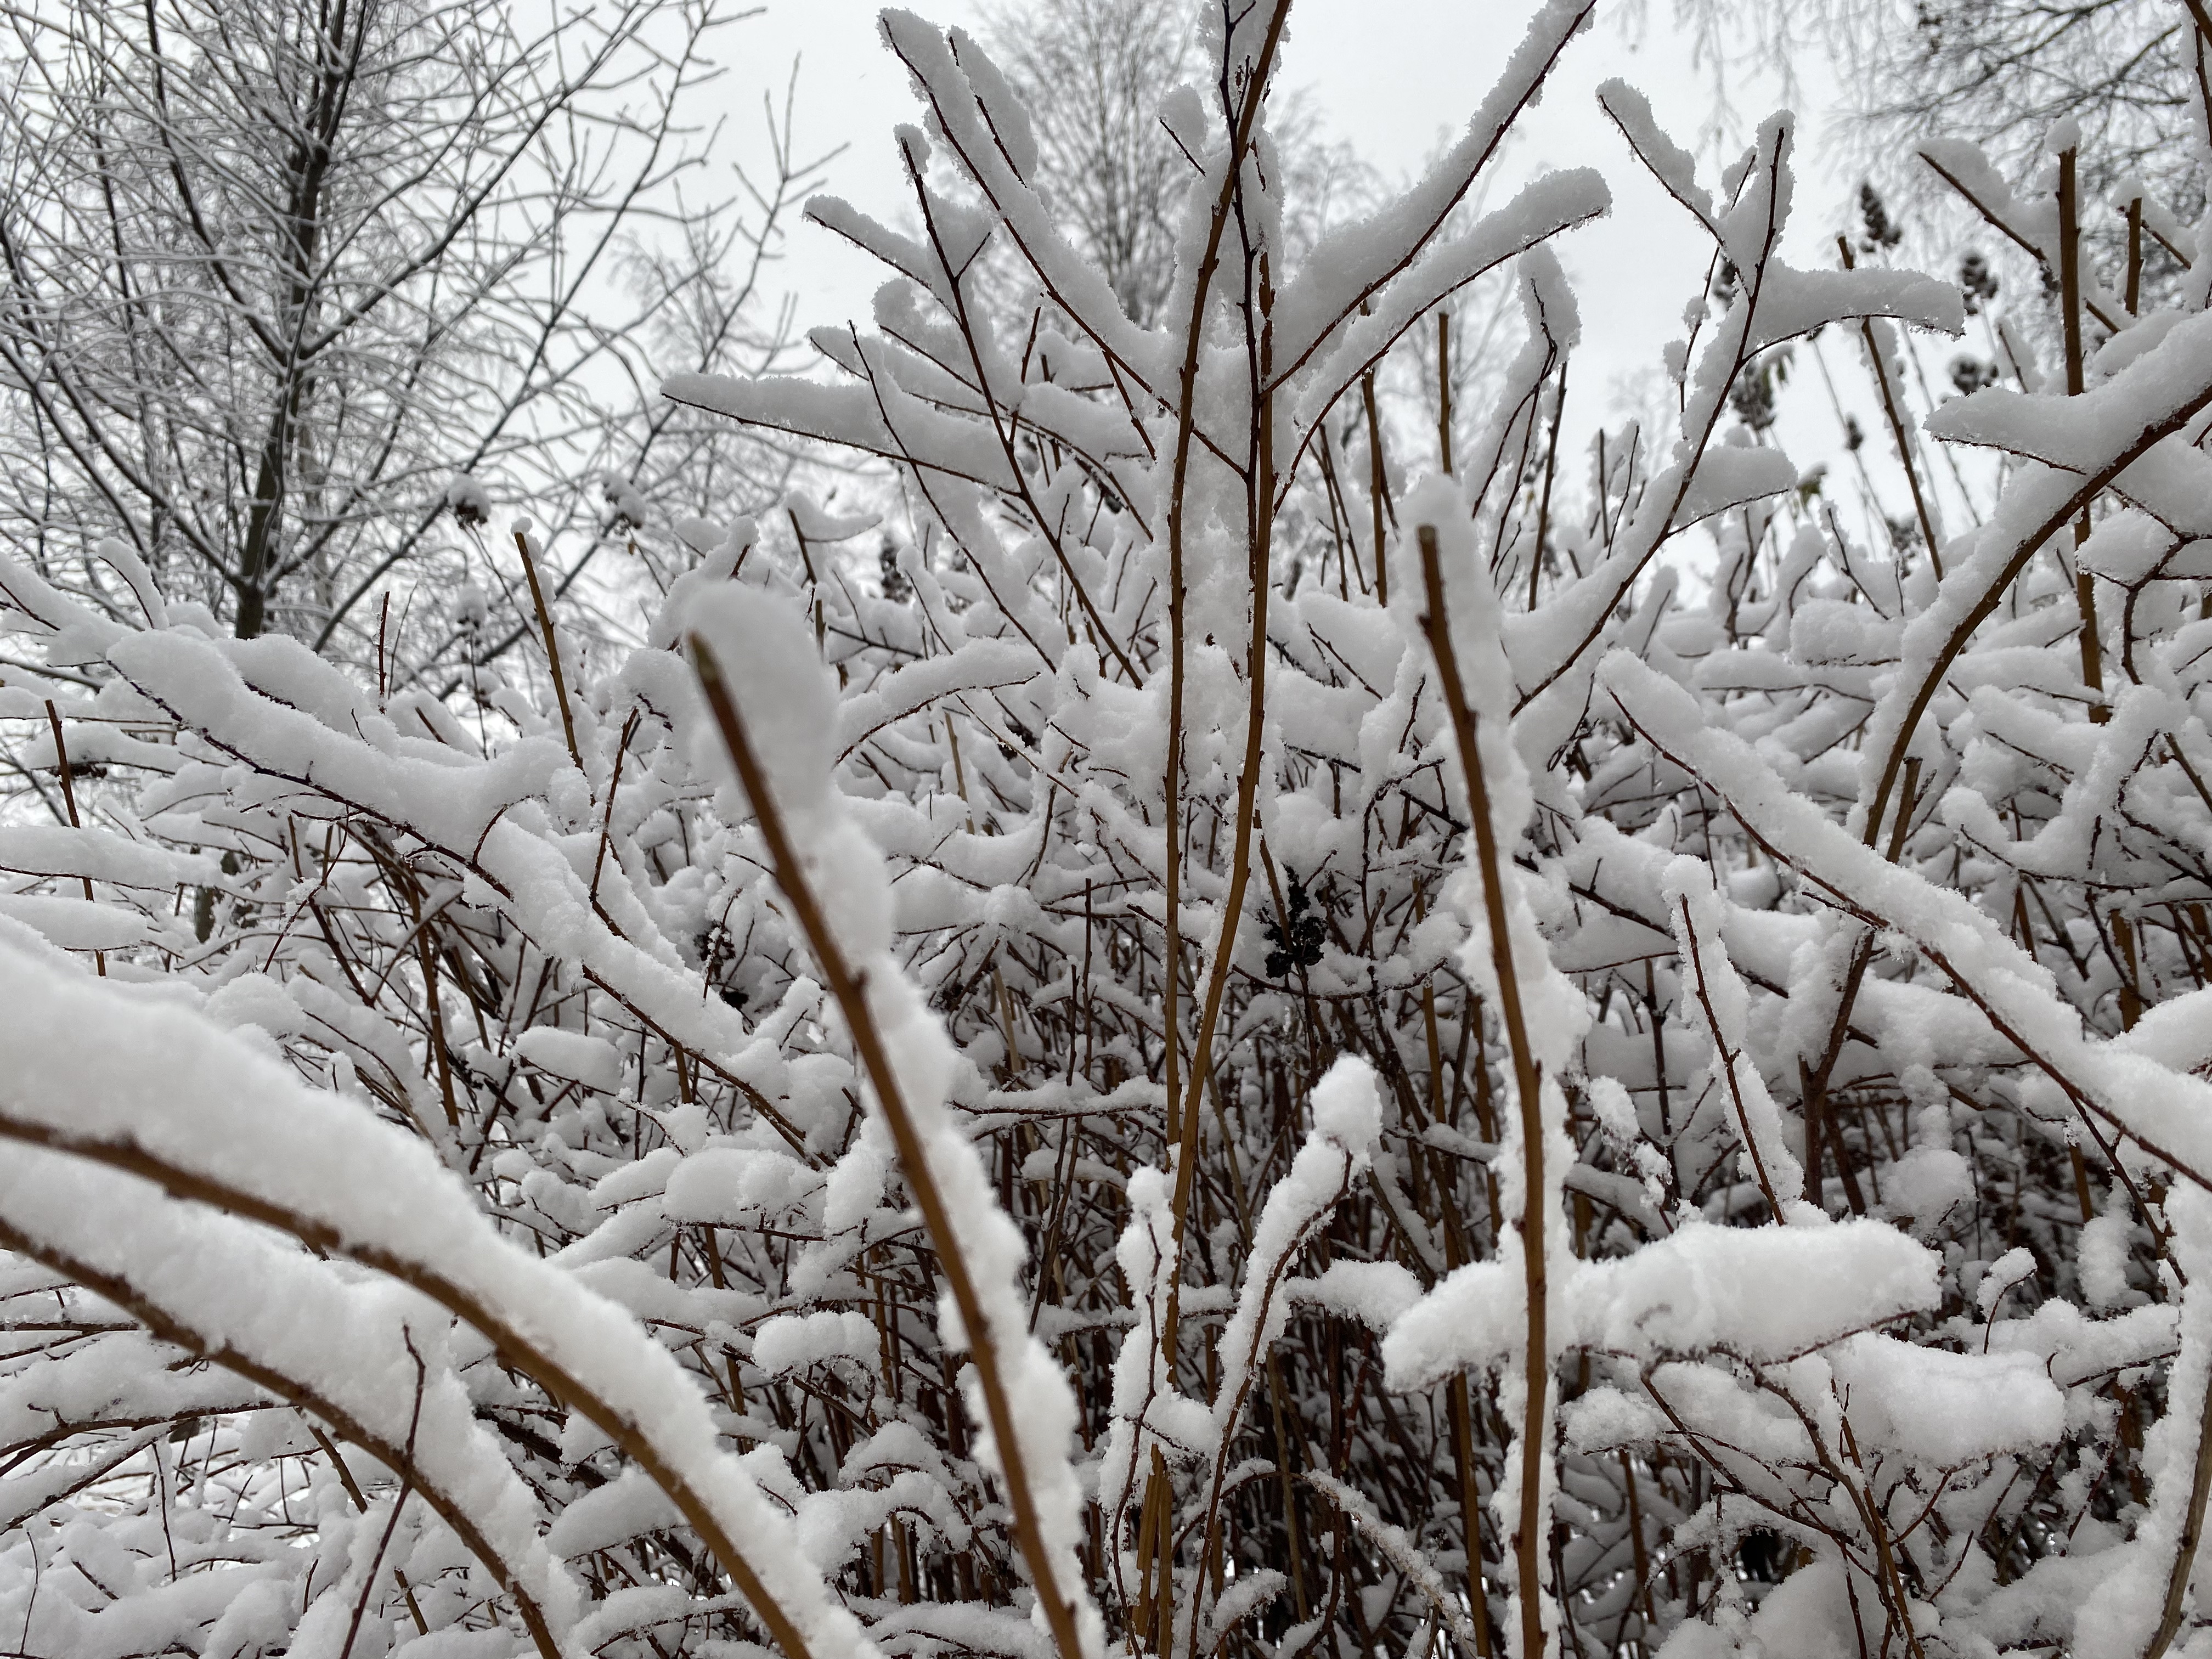 Выпал снег воскресенье. Сырой снег гнёт деревья над дорогой горизонтальные фото.